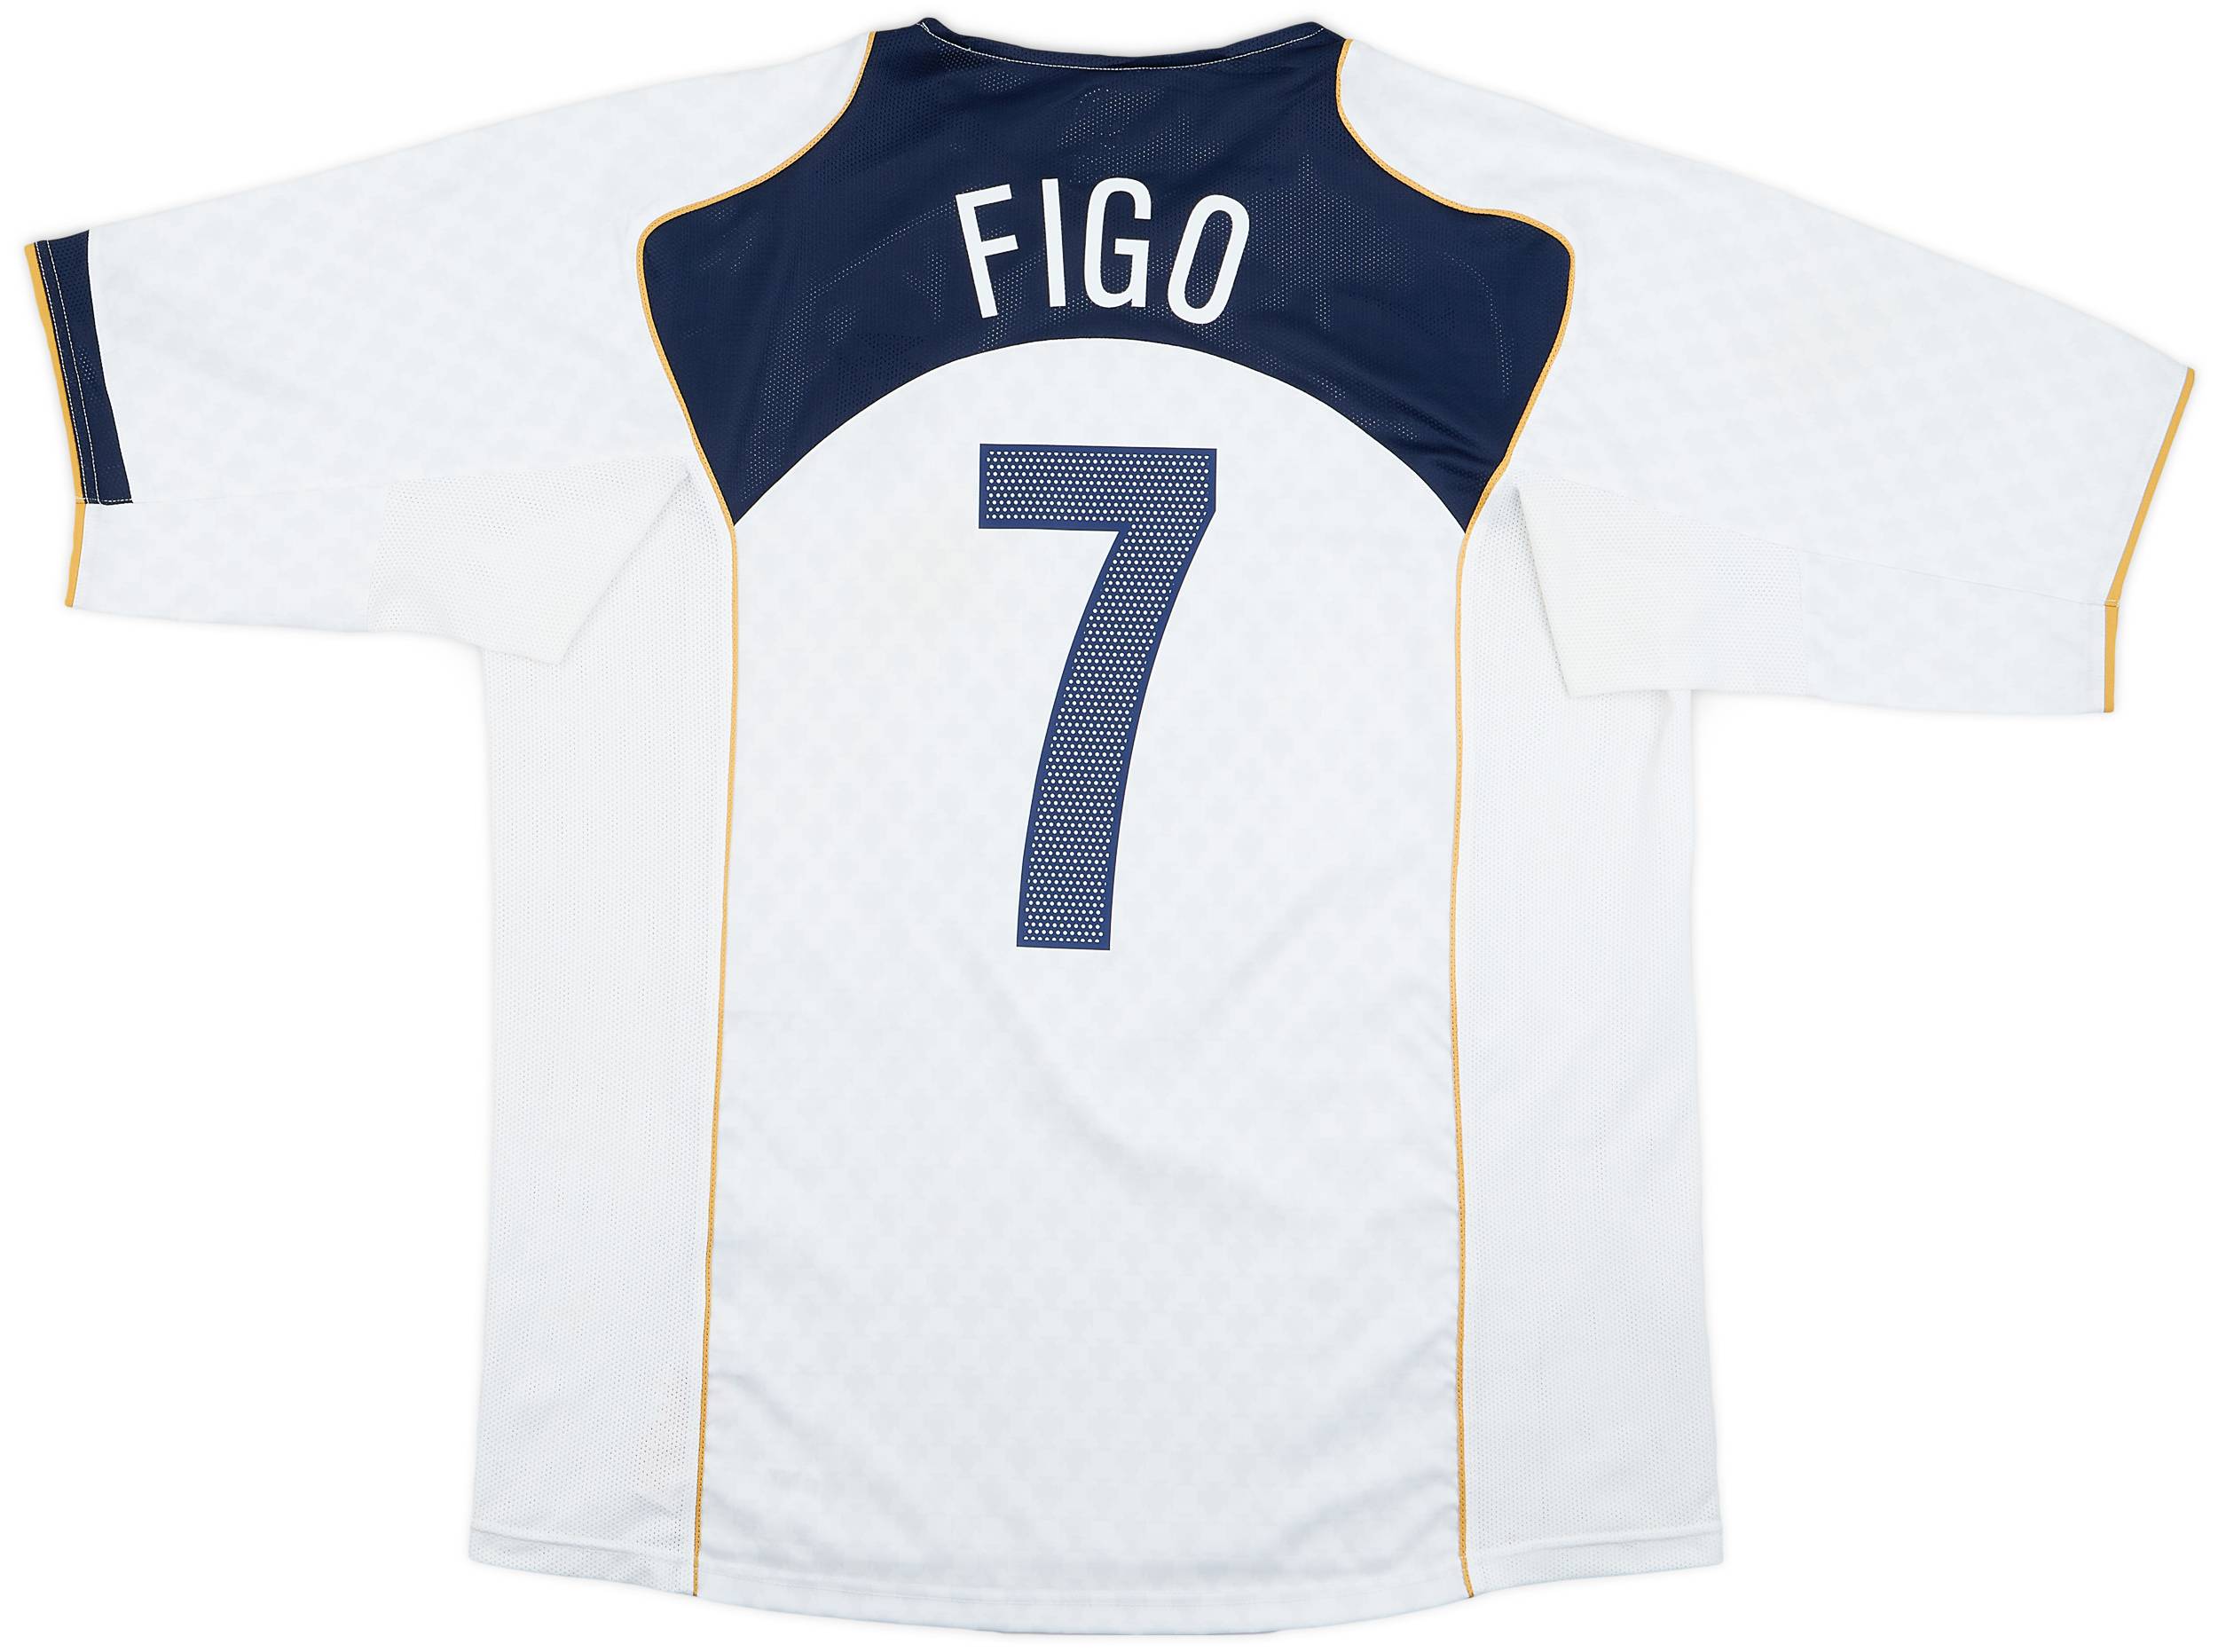 2004-06 Portugal Away Shirt Figo #7 - 8/10 - (XL)